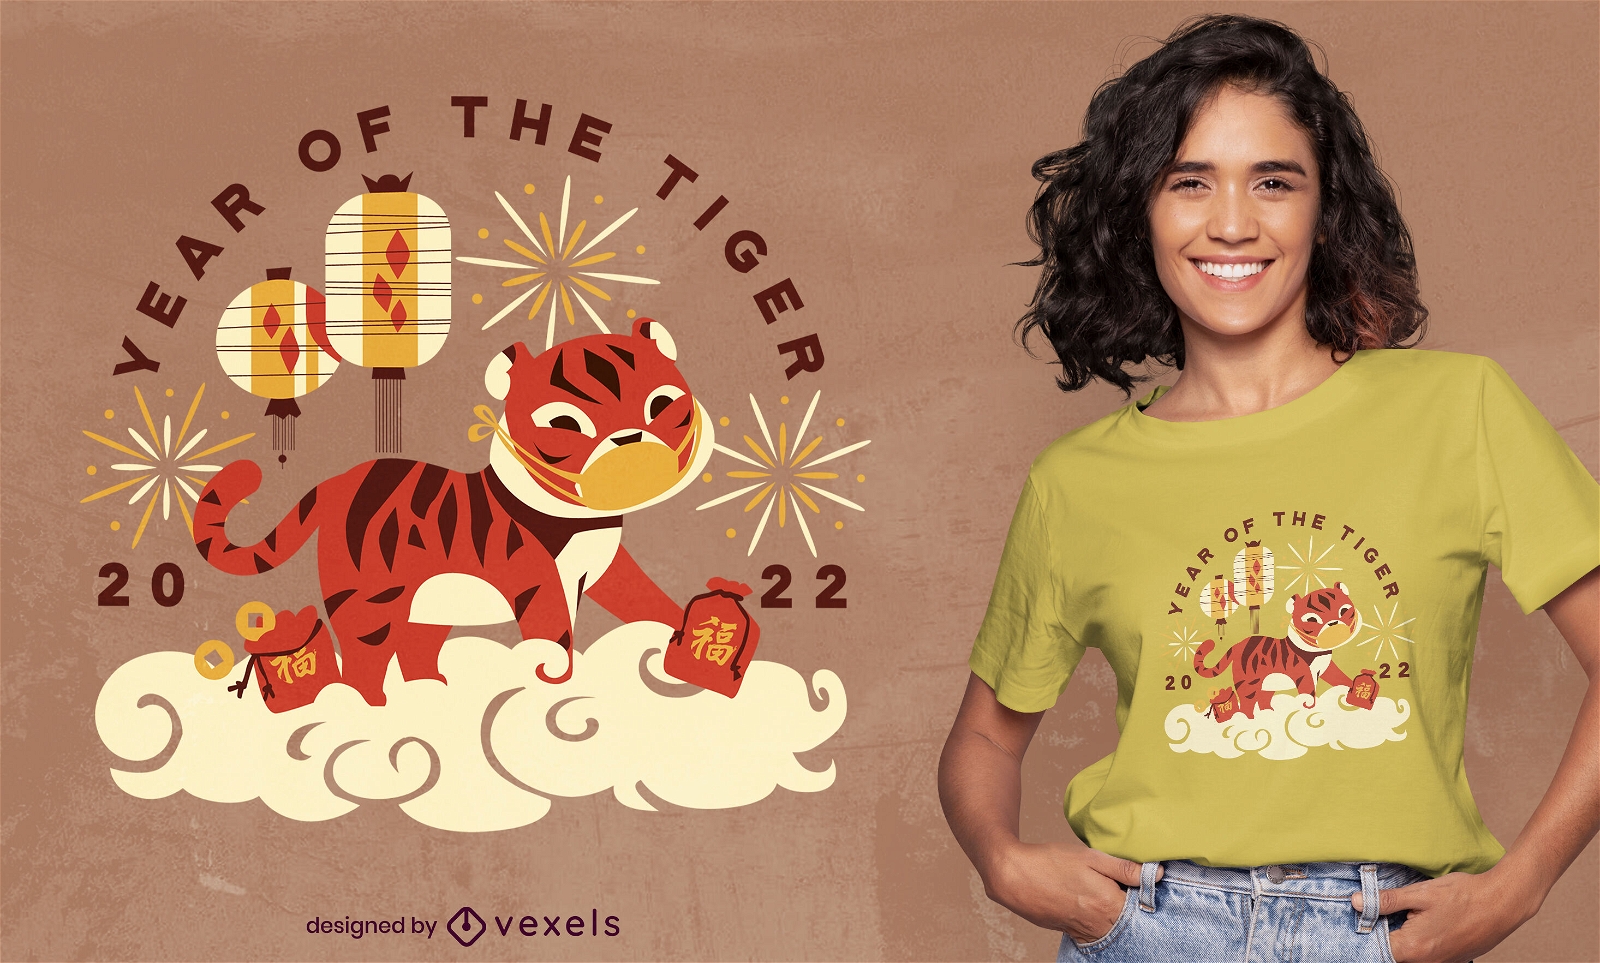 Diseño de camiseta año del tigre nube.